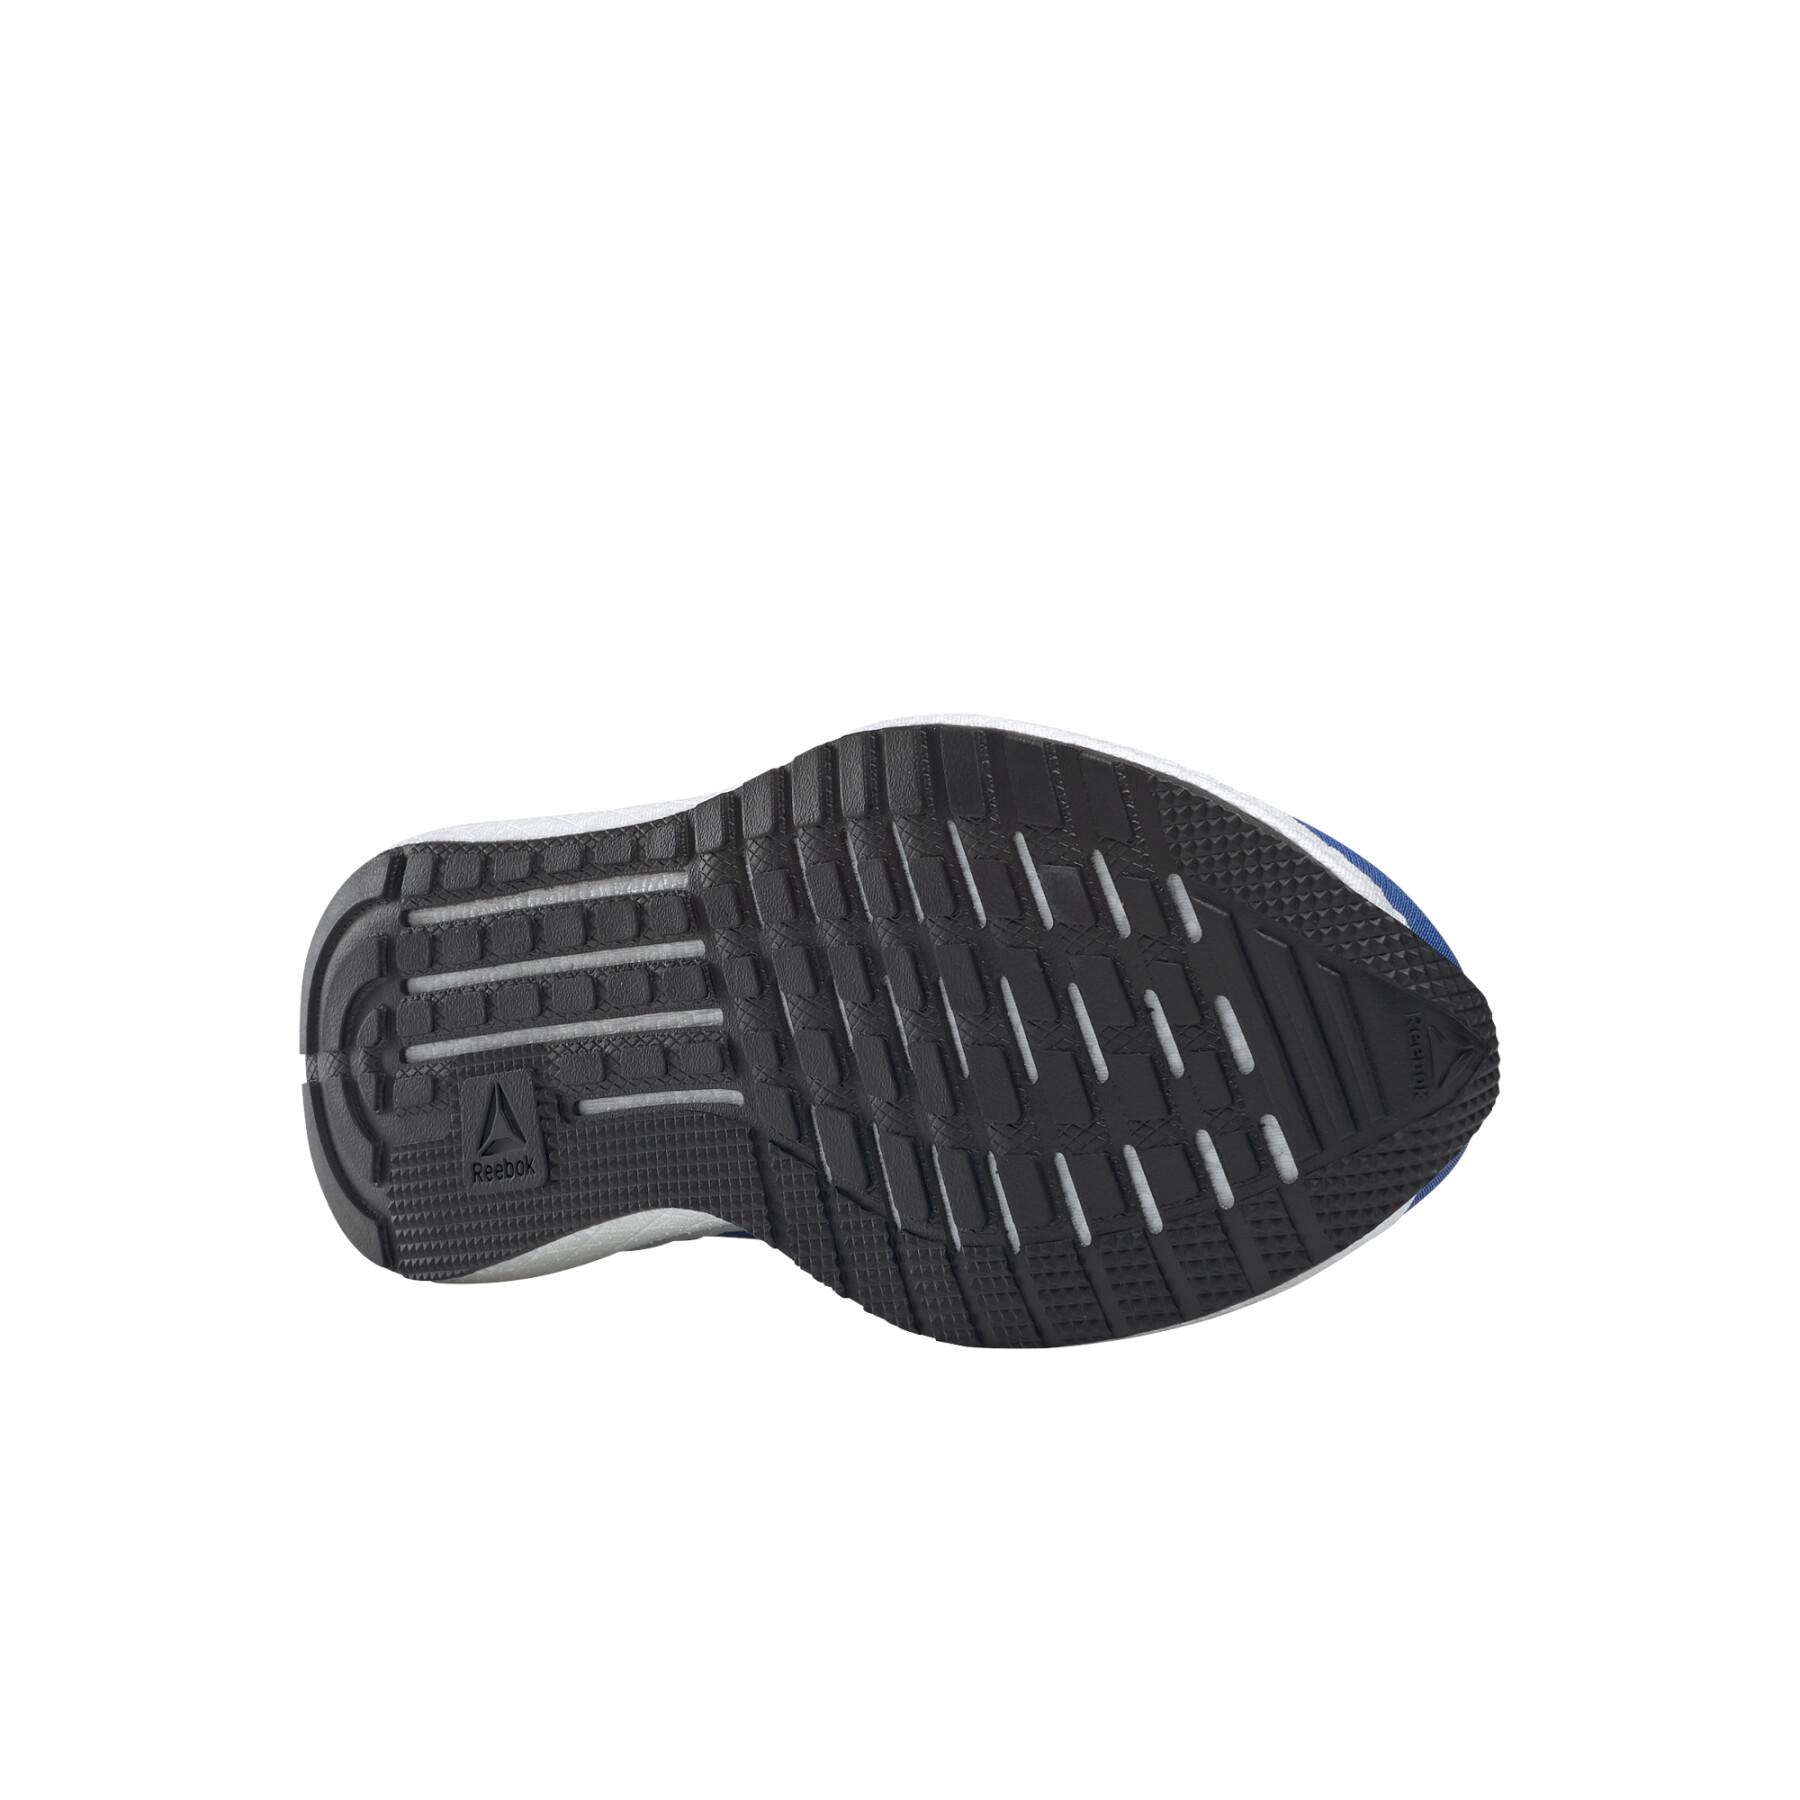 Schuhe Reebok Forever Floatride Energy 2.0